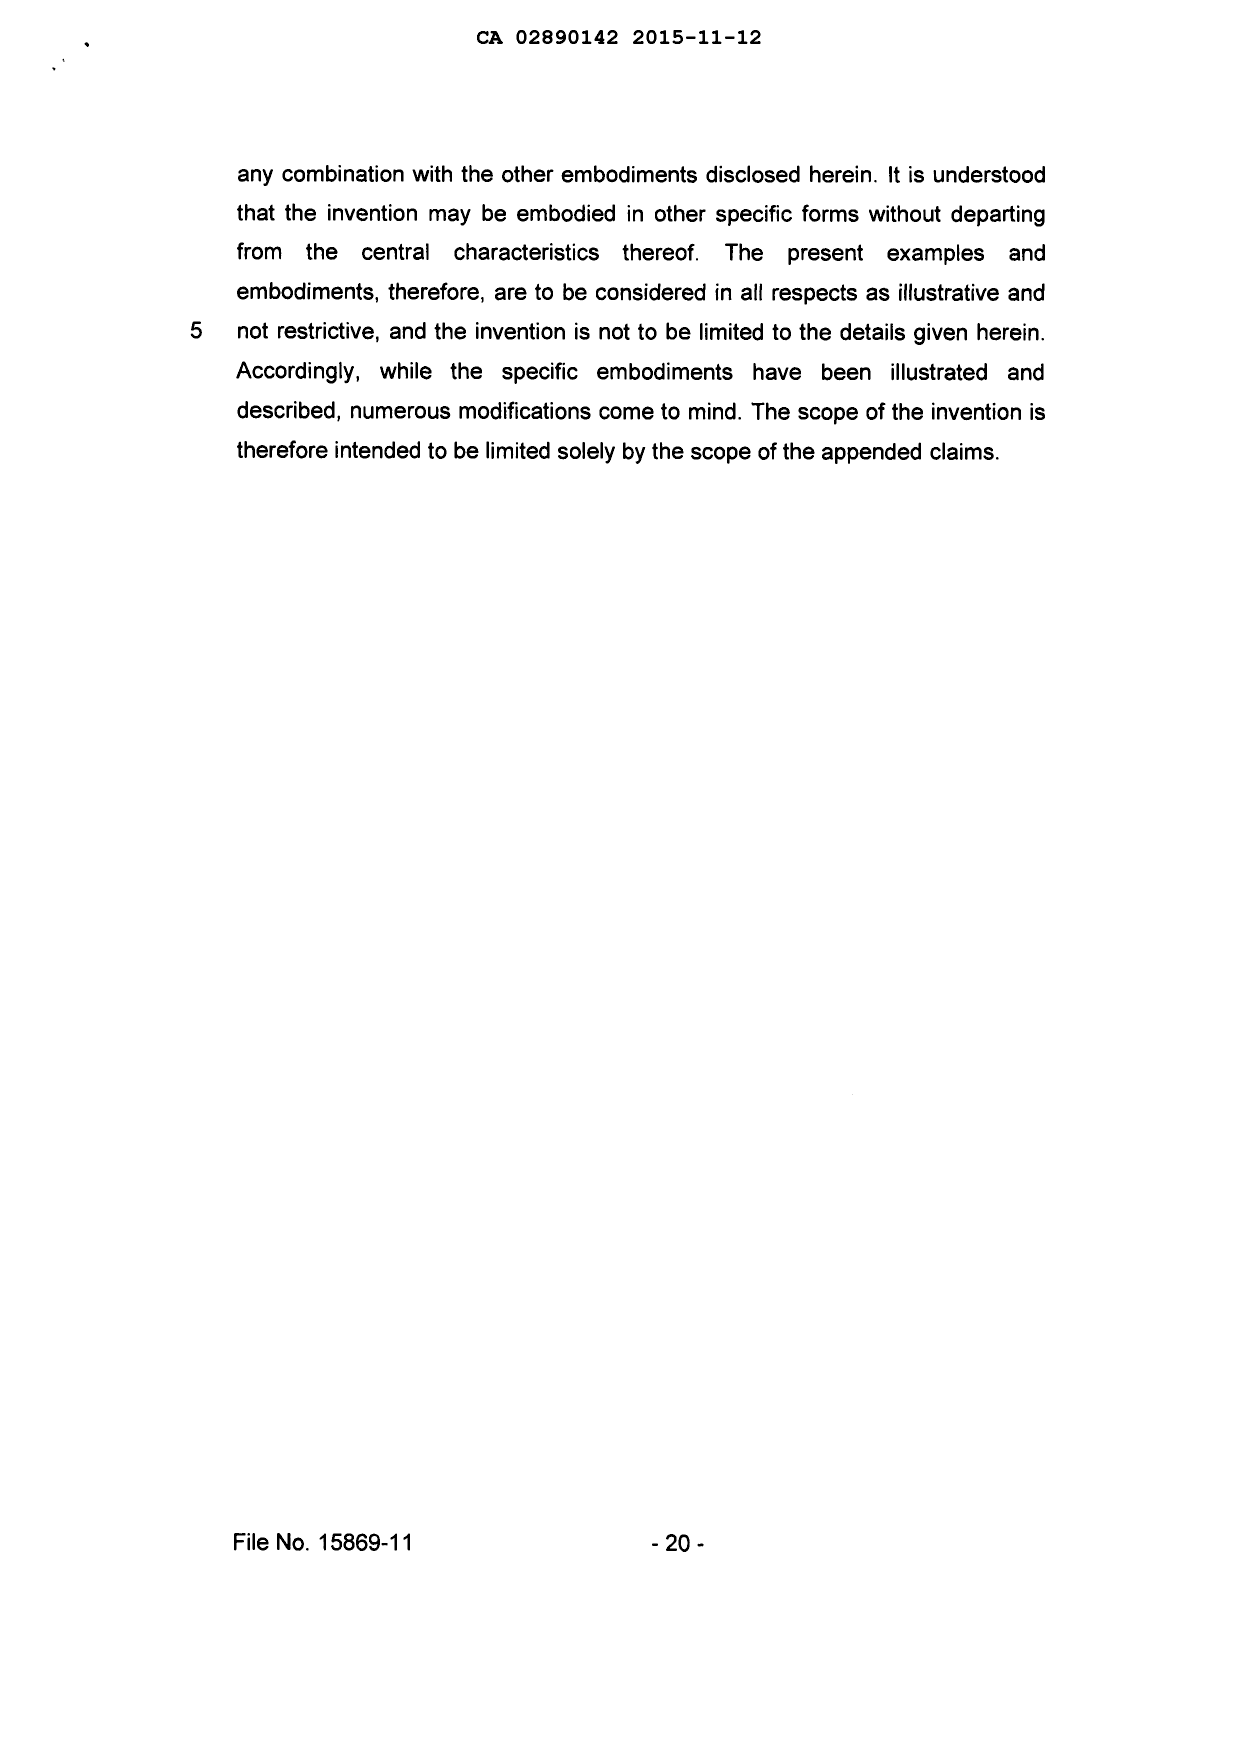 Document de brevet canadien 2890142. Description 20141212. Image 20 de 20